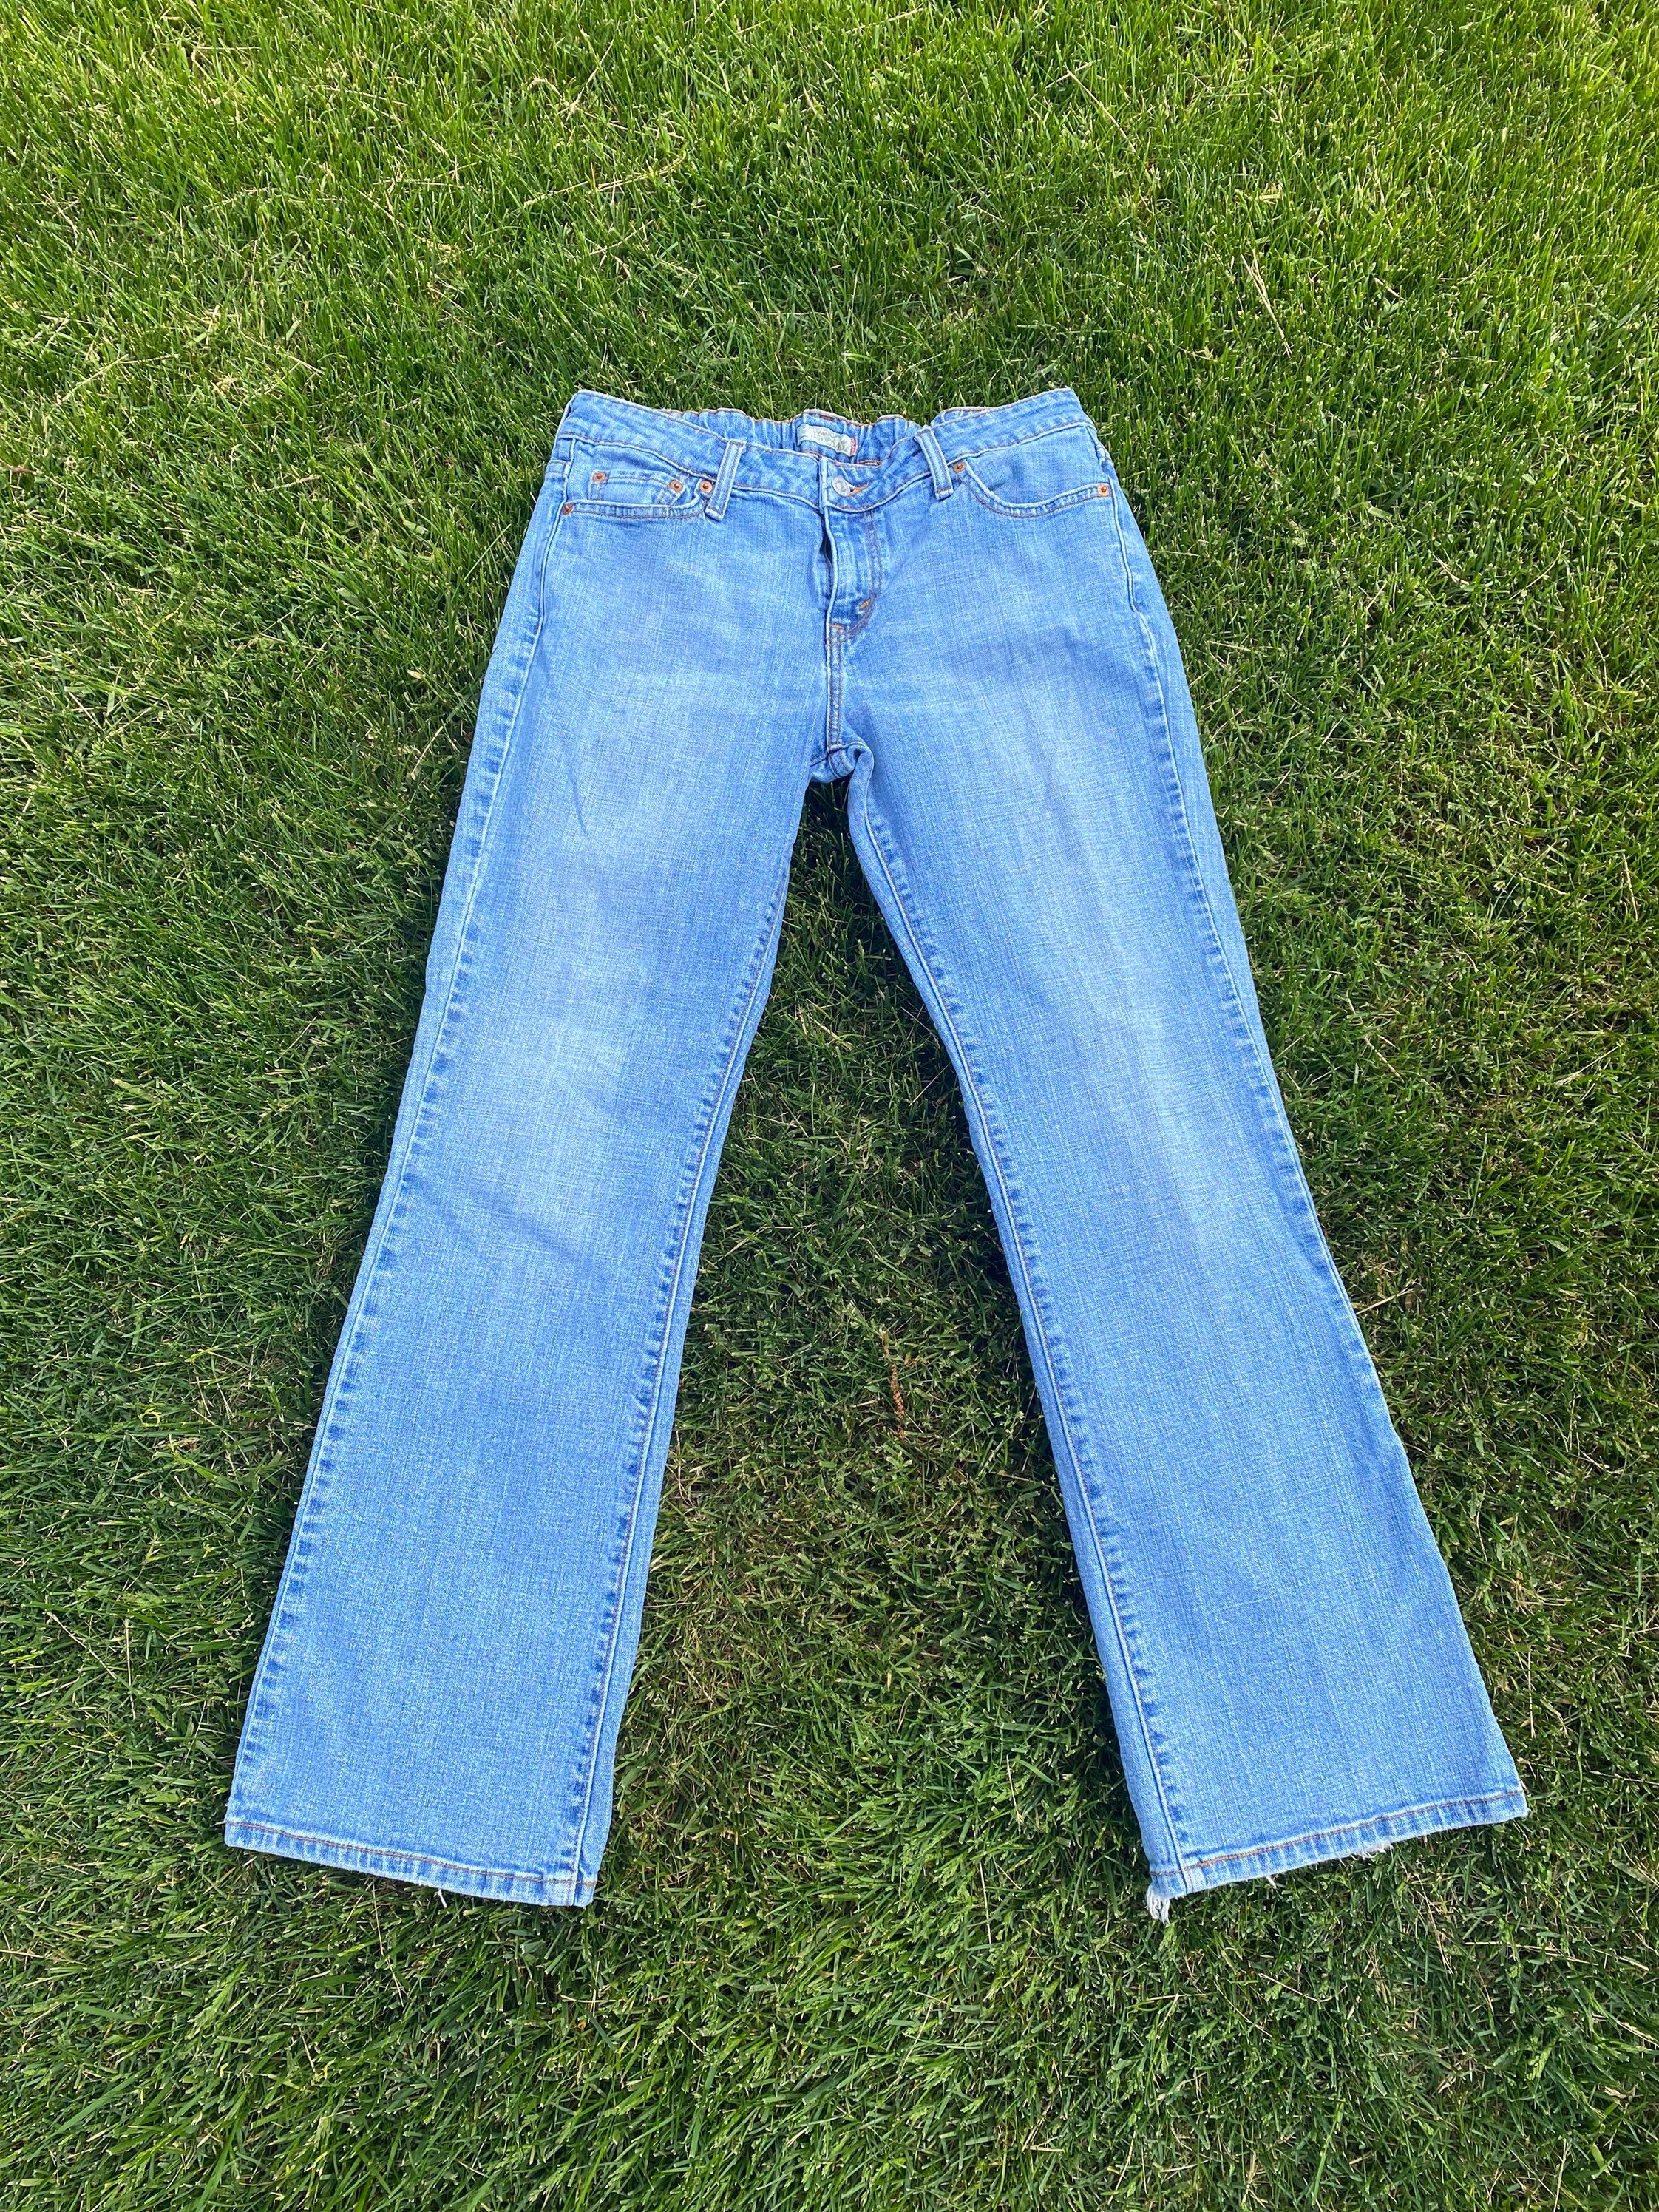 Vintage Levis Jeans 545 Levis Boot Cut Size 12M Etsy